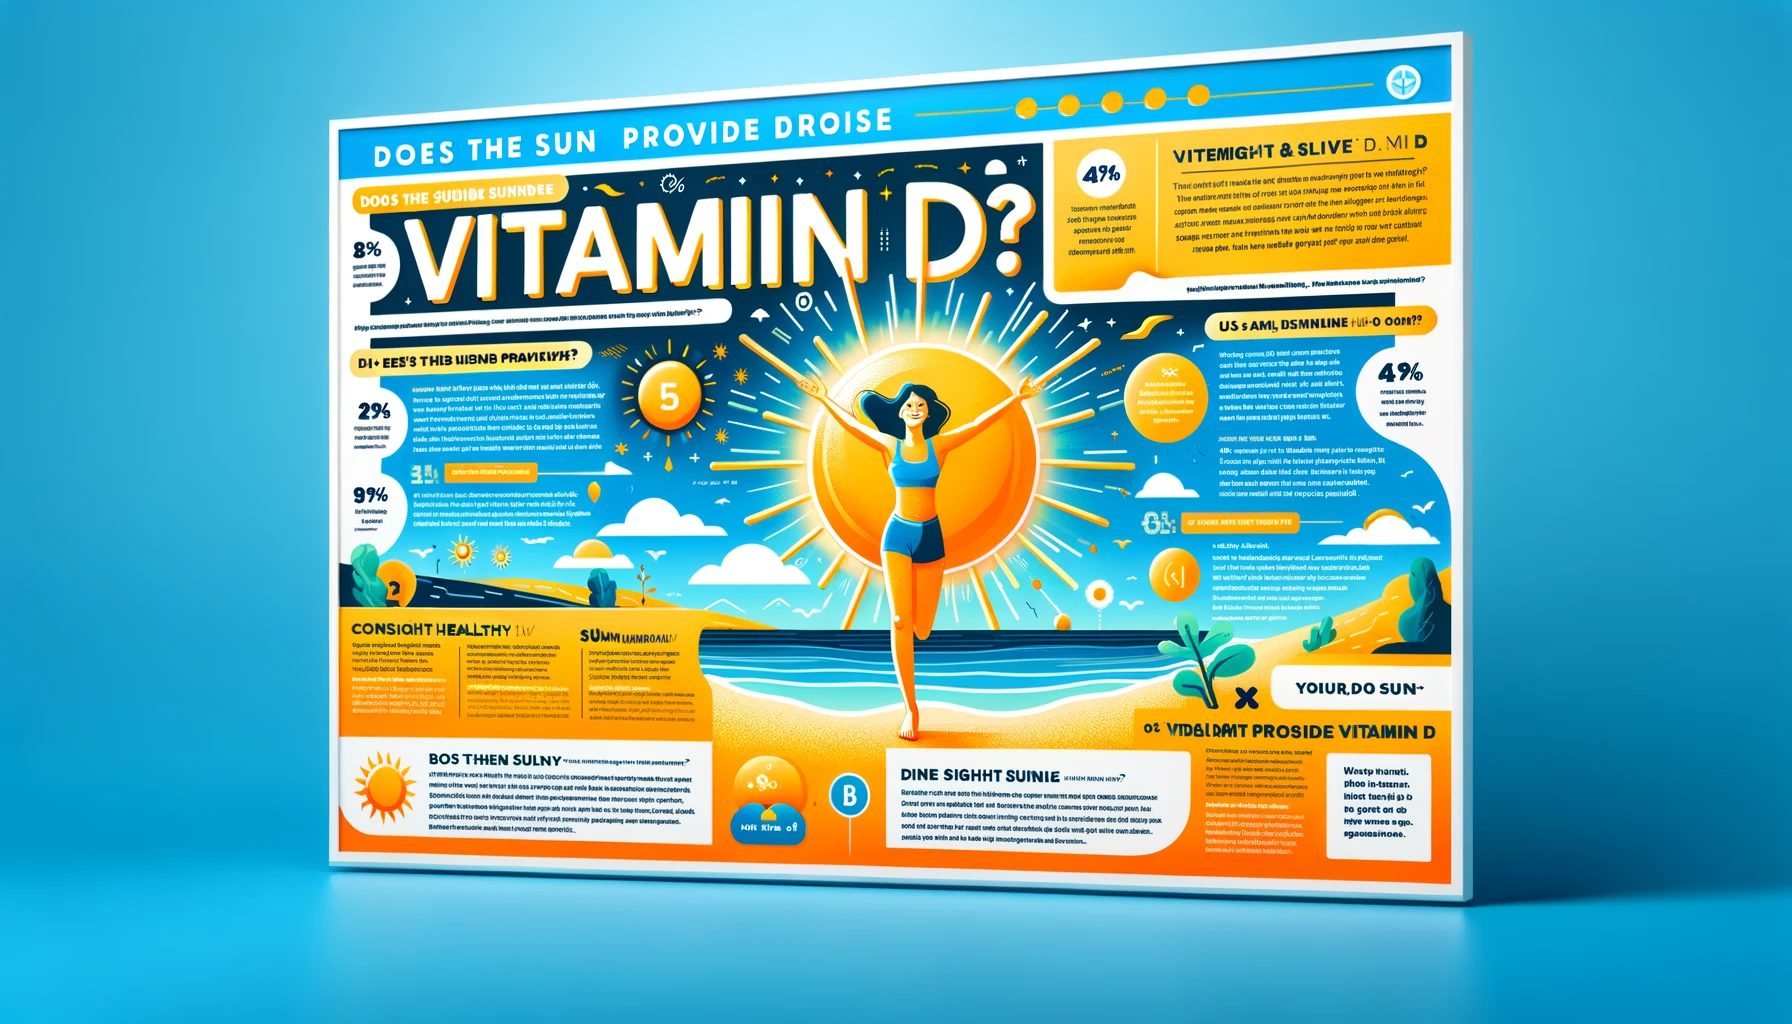 Est-ce que le soleil donne de la vitamine D ?